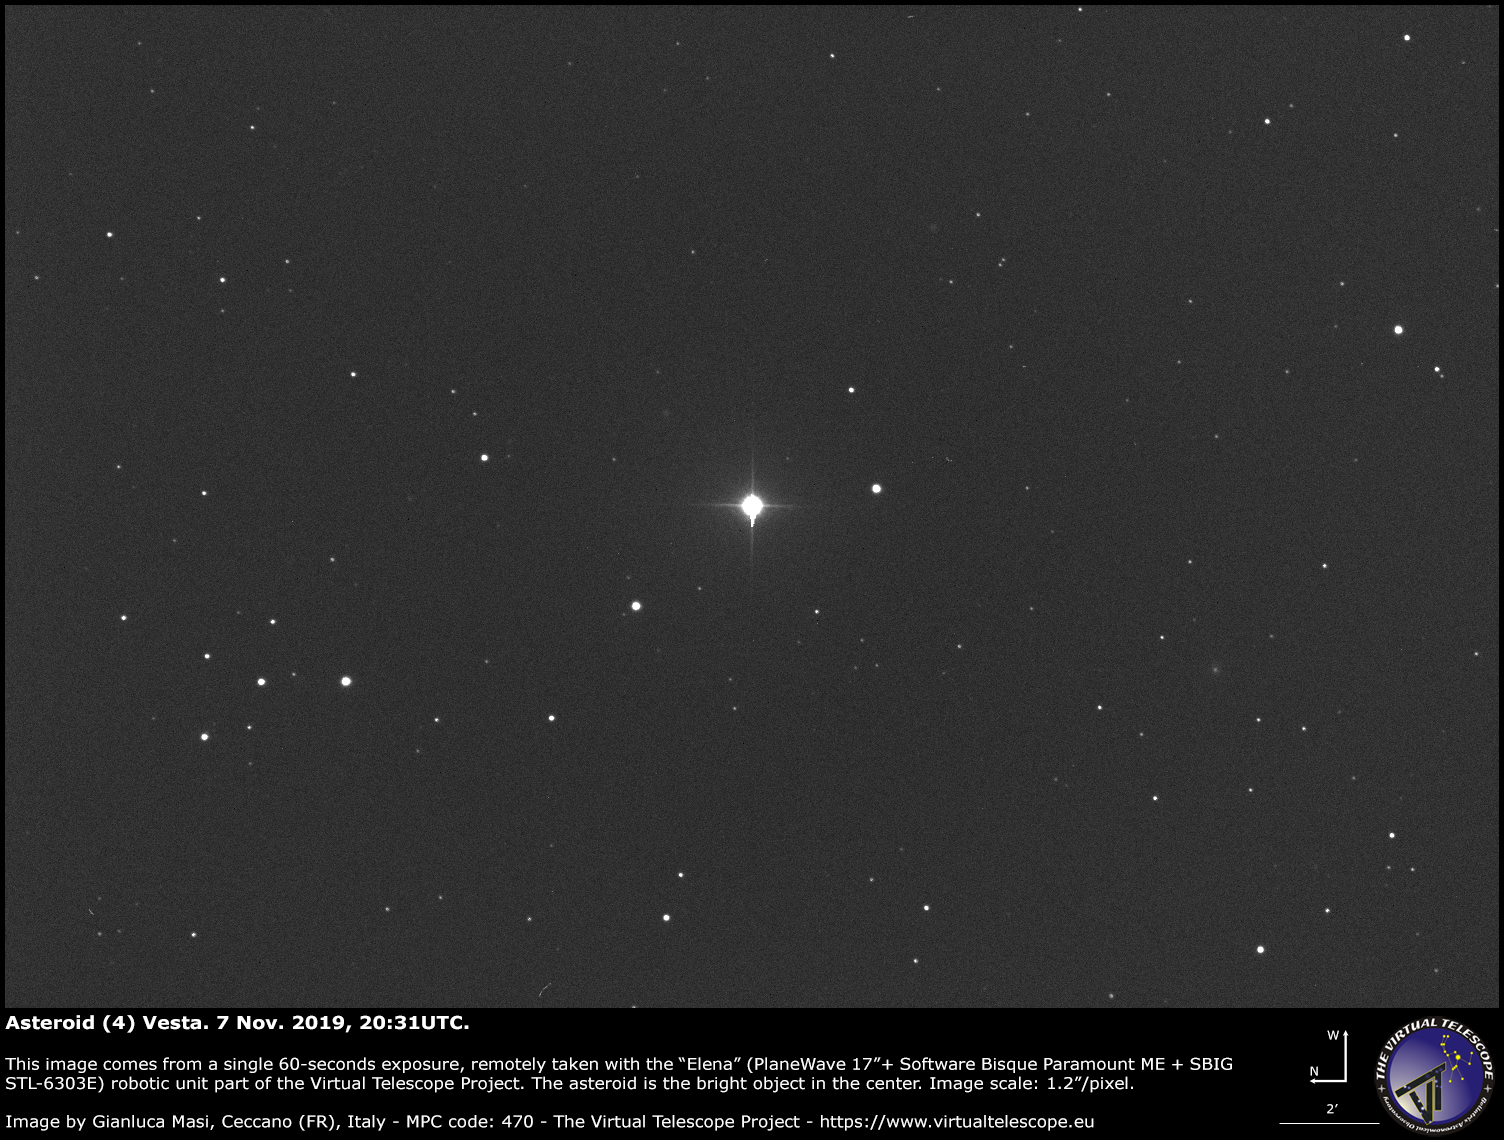 Asteroid (4) Vesta - 7 Nov. 2019